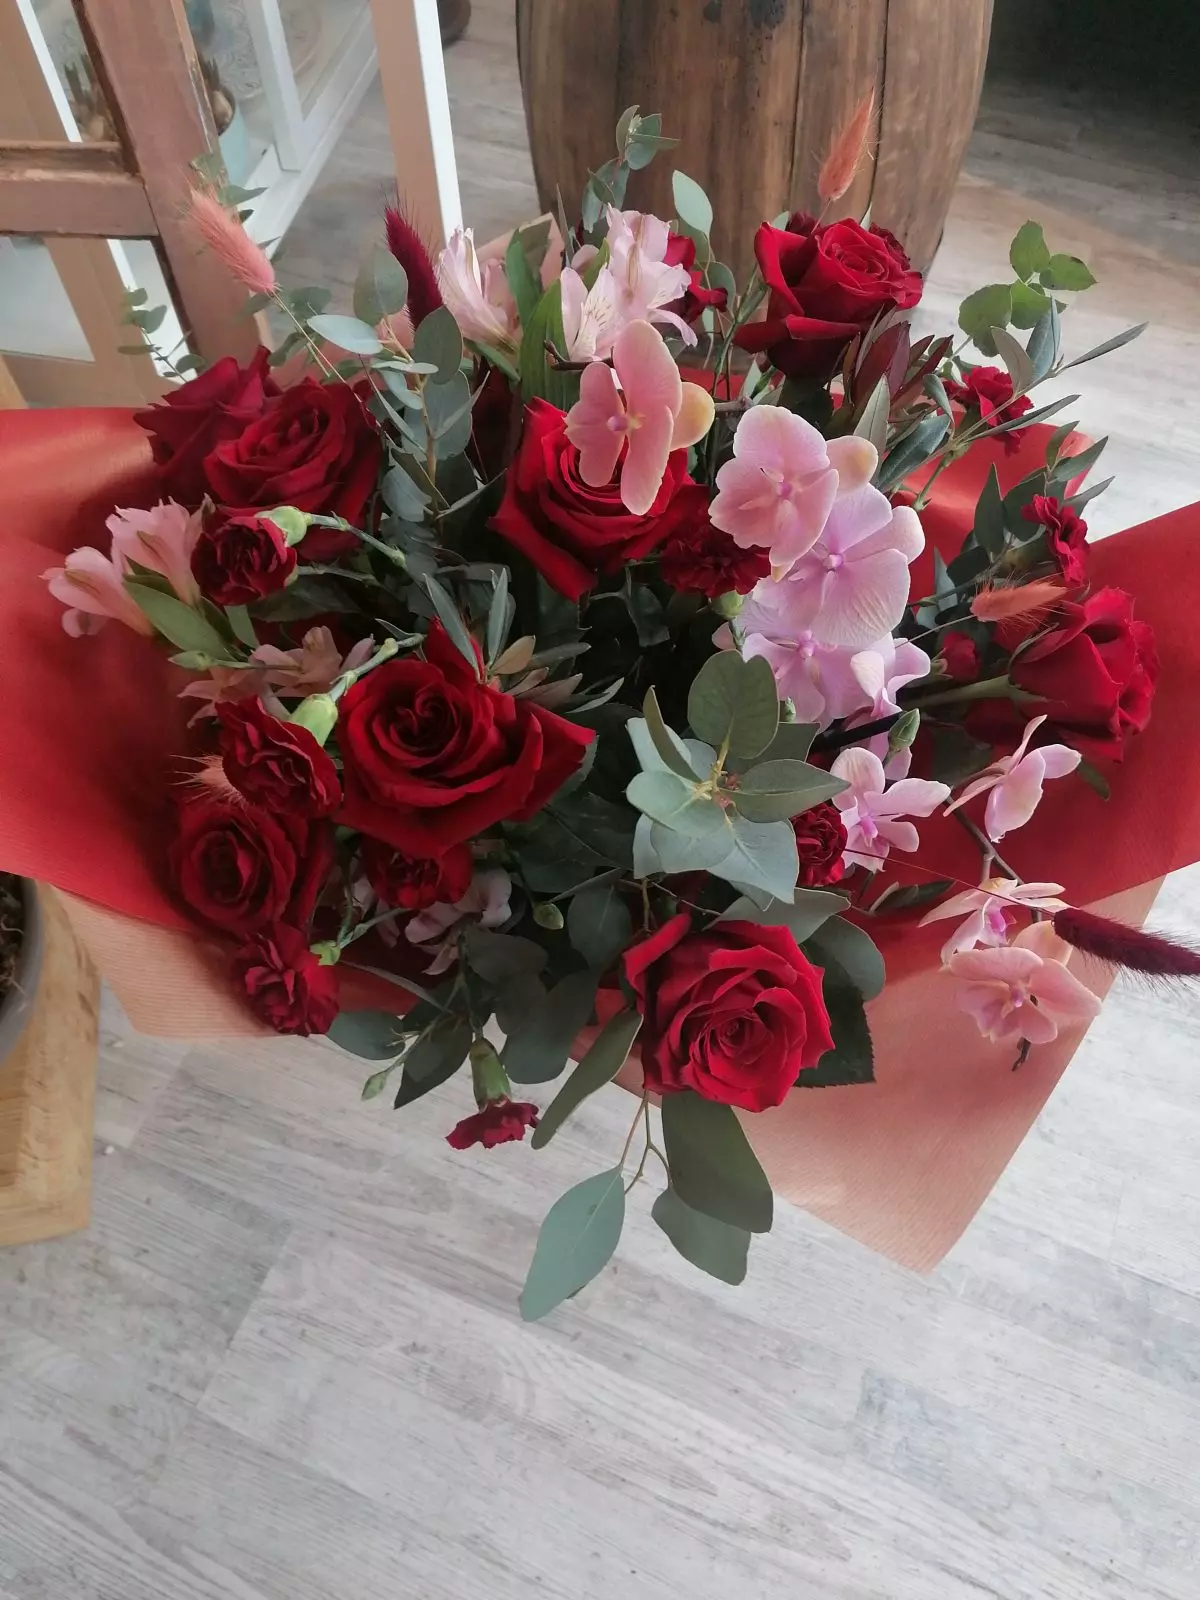 Дорогоцінні червоні троянди, орхідеї фаленопсис та пудрово-рожеві акценти створюють сучасне видання букета. Своєрідний клас!